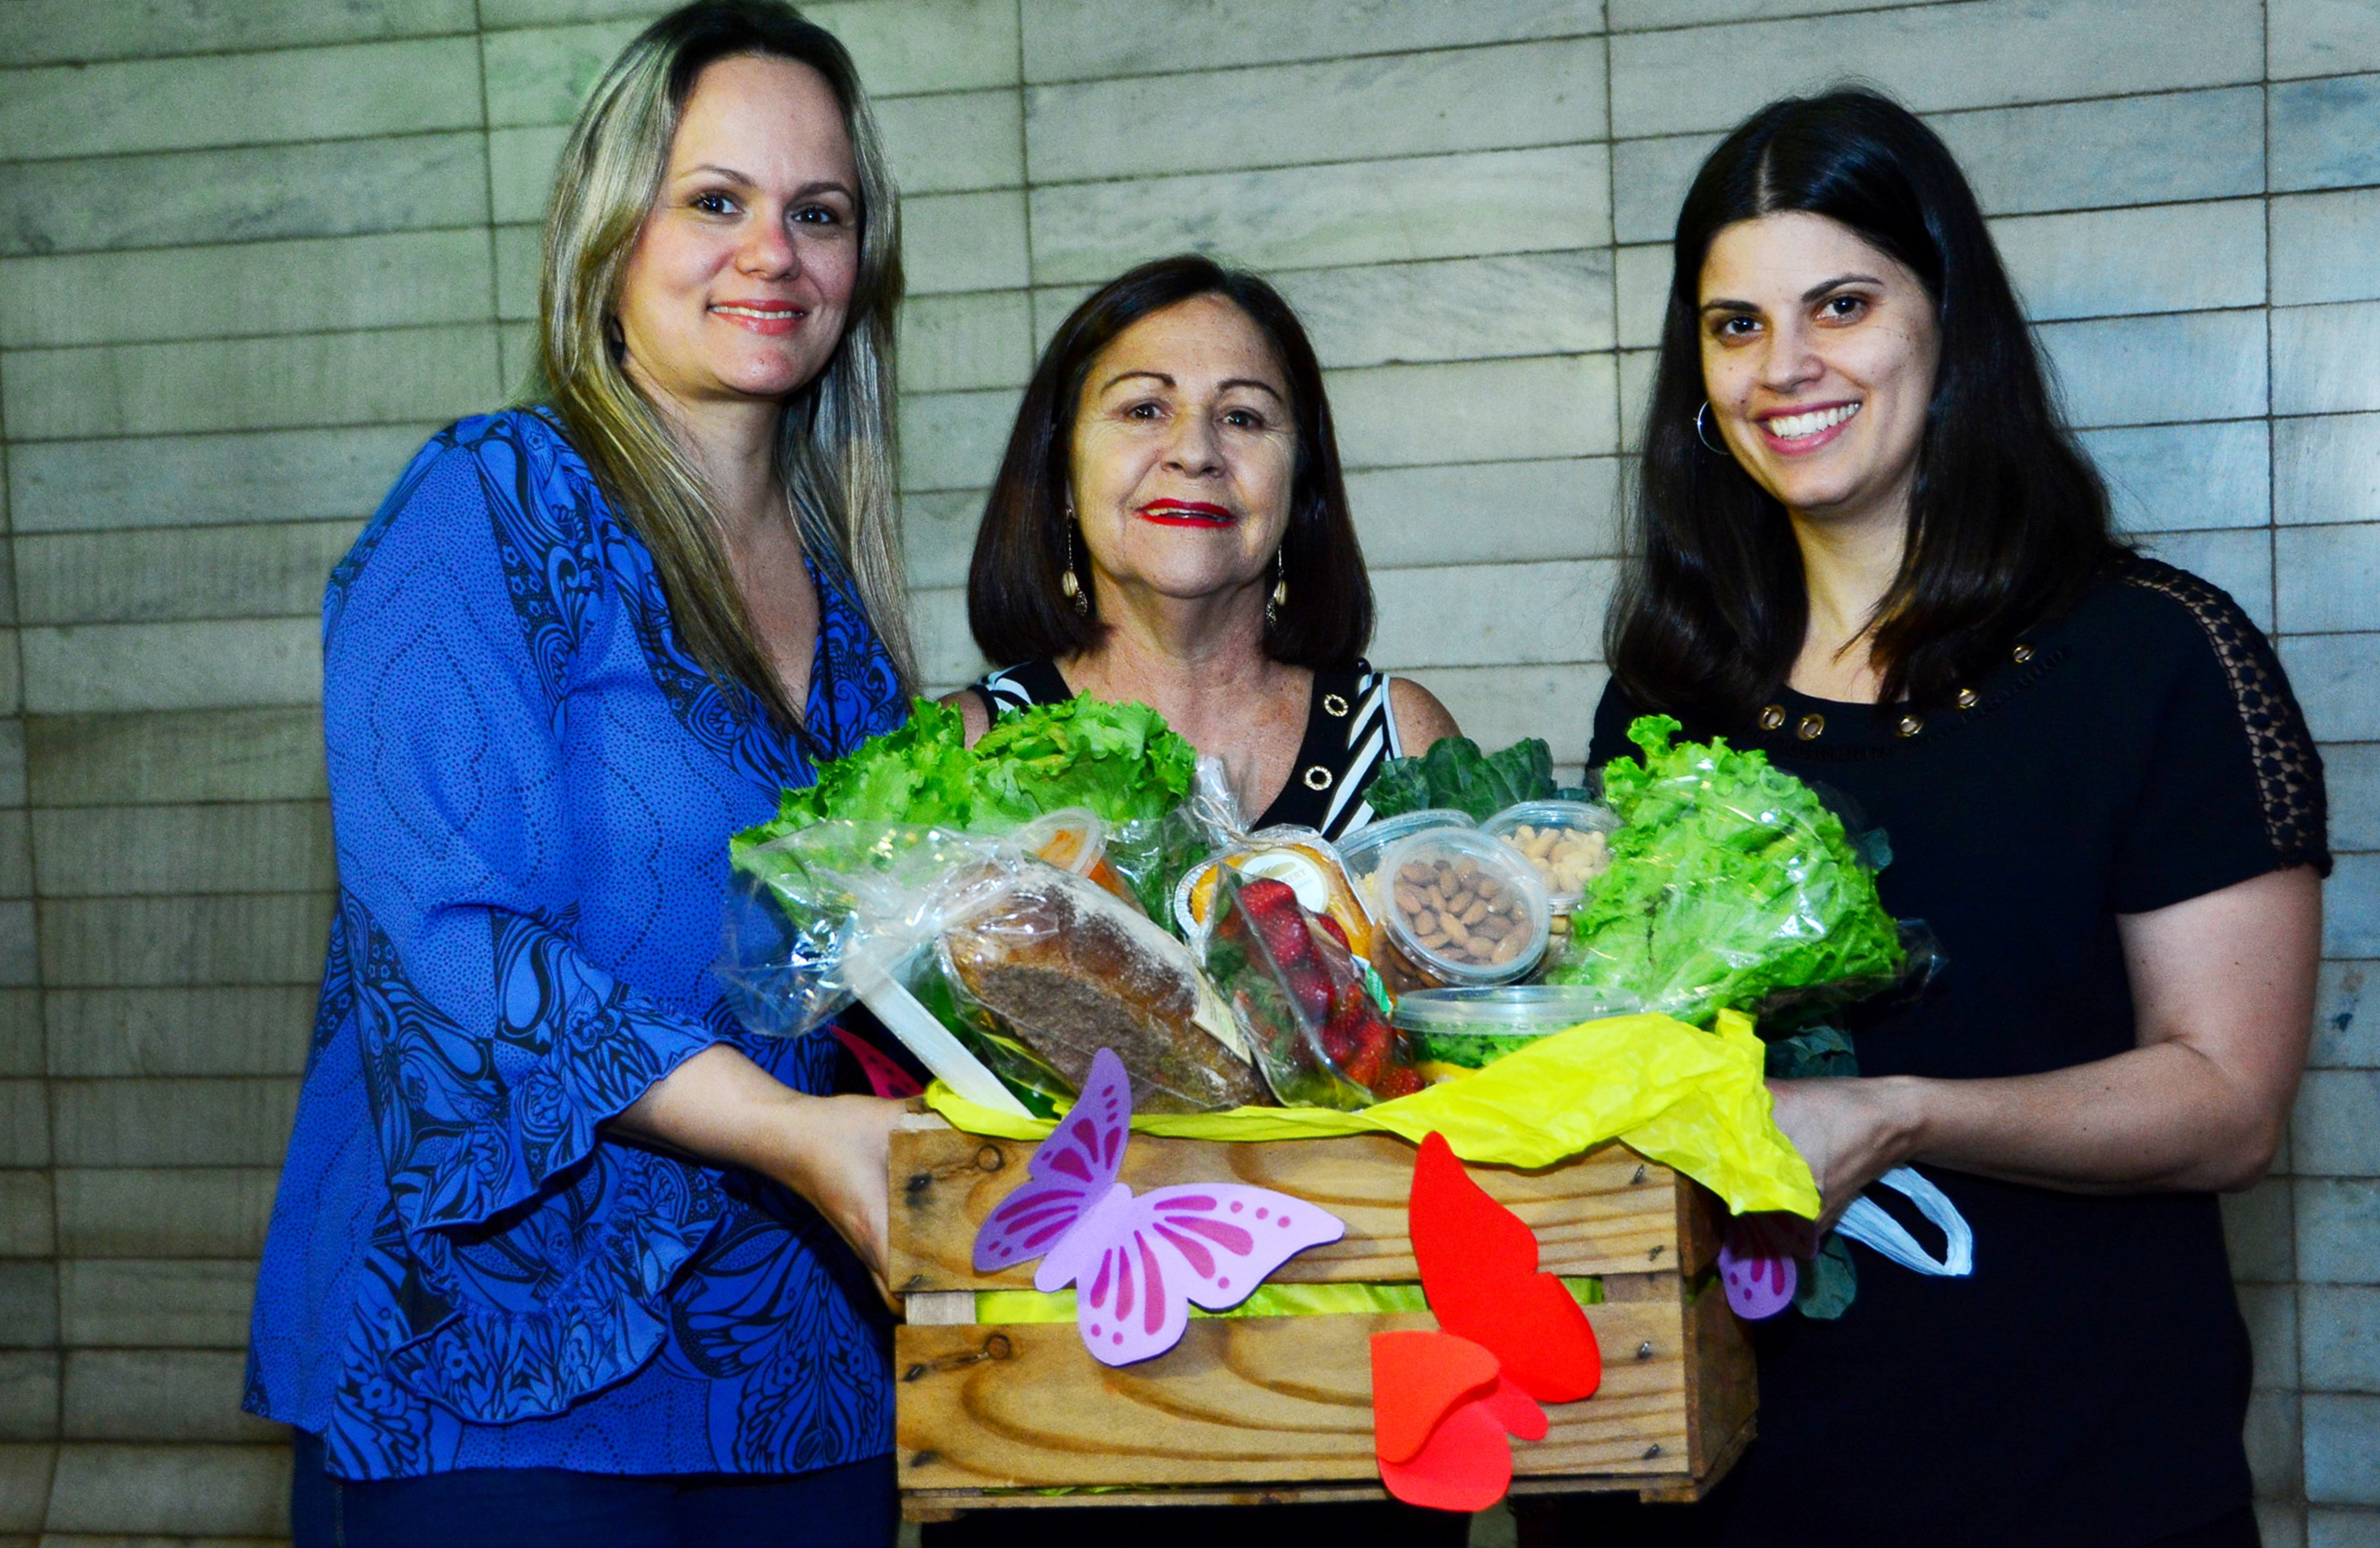 INSTITUCIONAL: TRF1 entrega cesta saudável em comemoração à Semana do Meio Ambiente